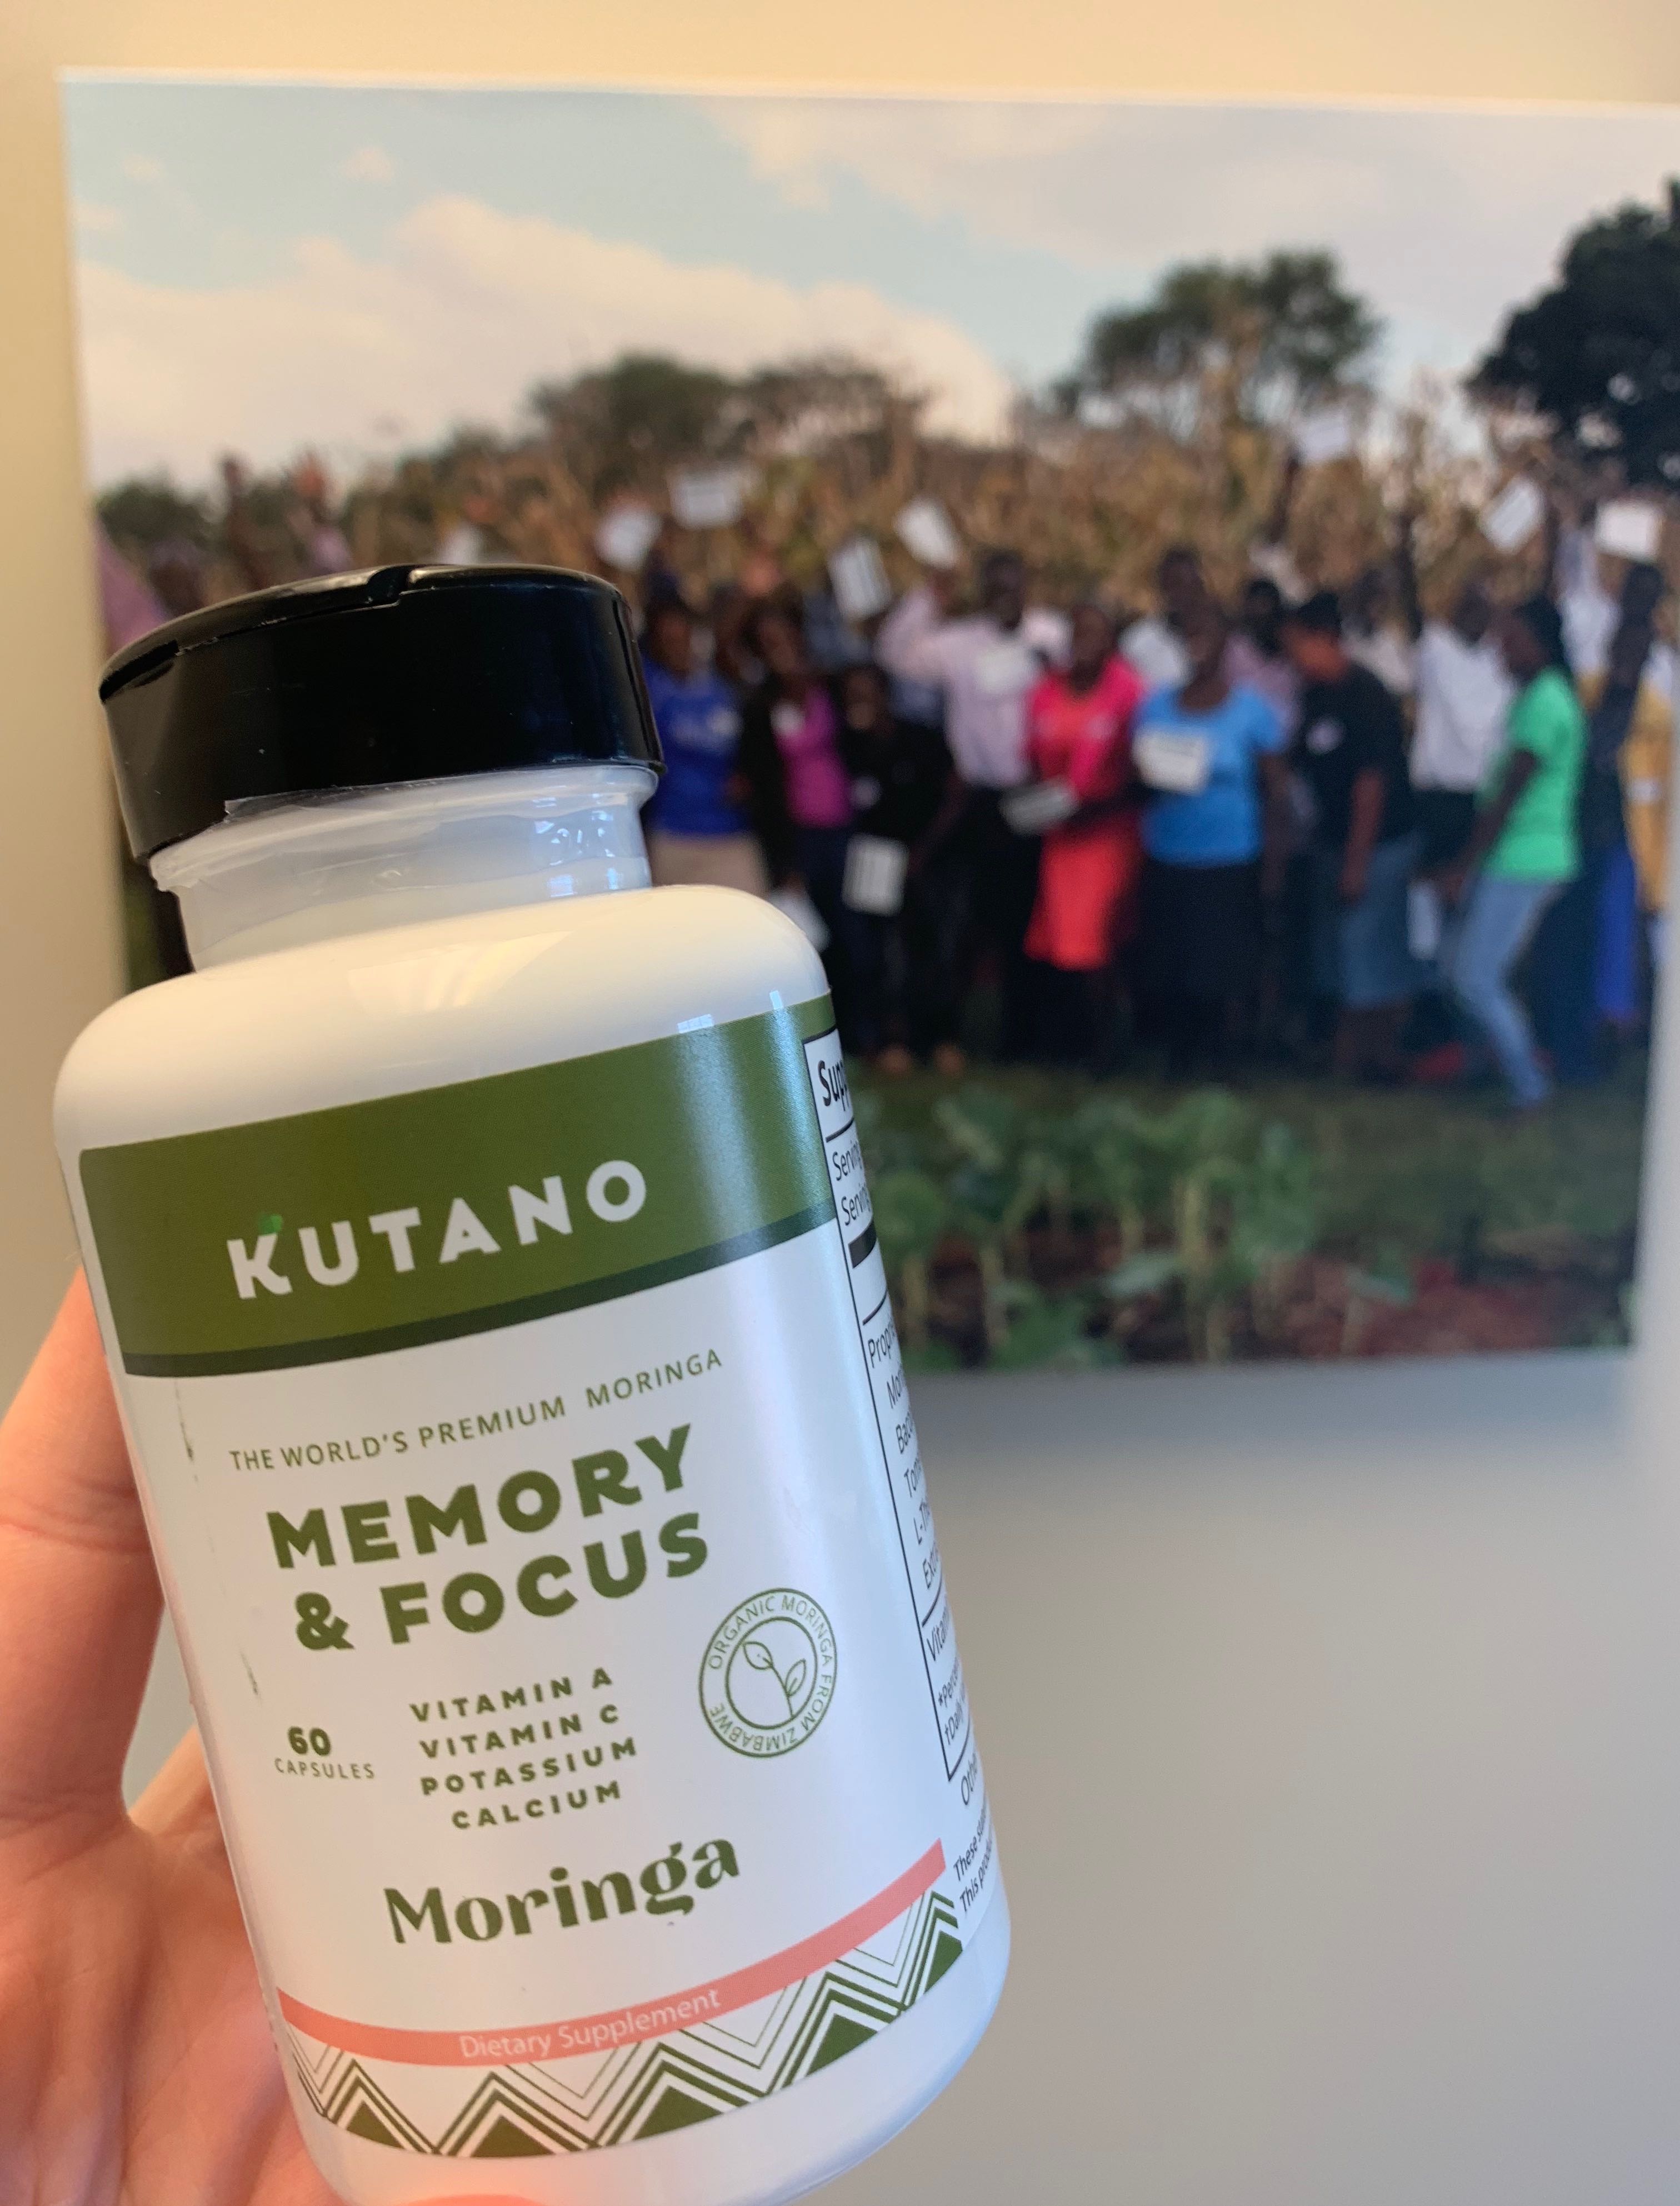 Kutano Memory & Focus moringa capsules are improving memory and mental clarity.